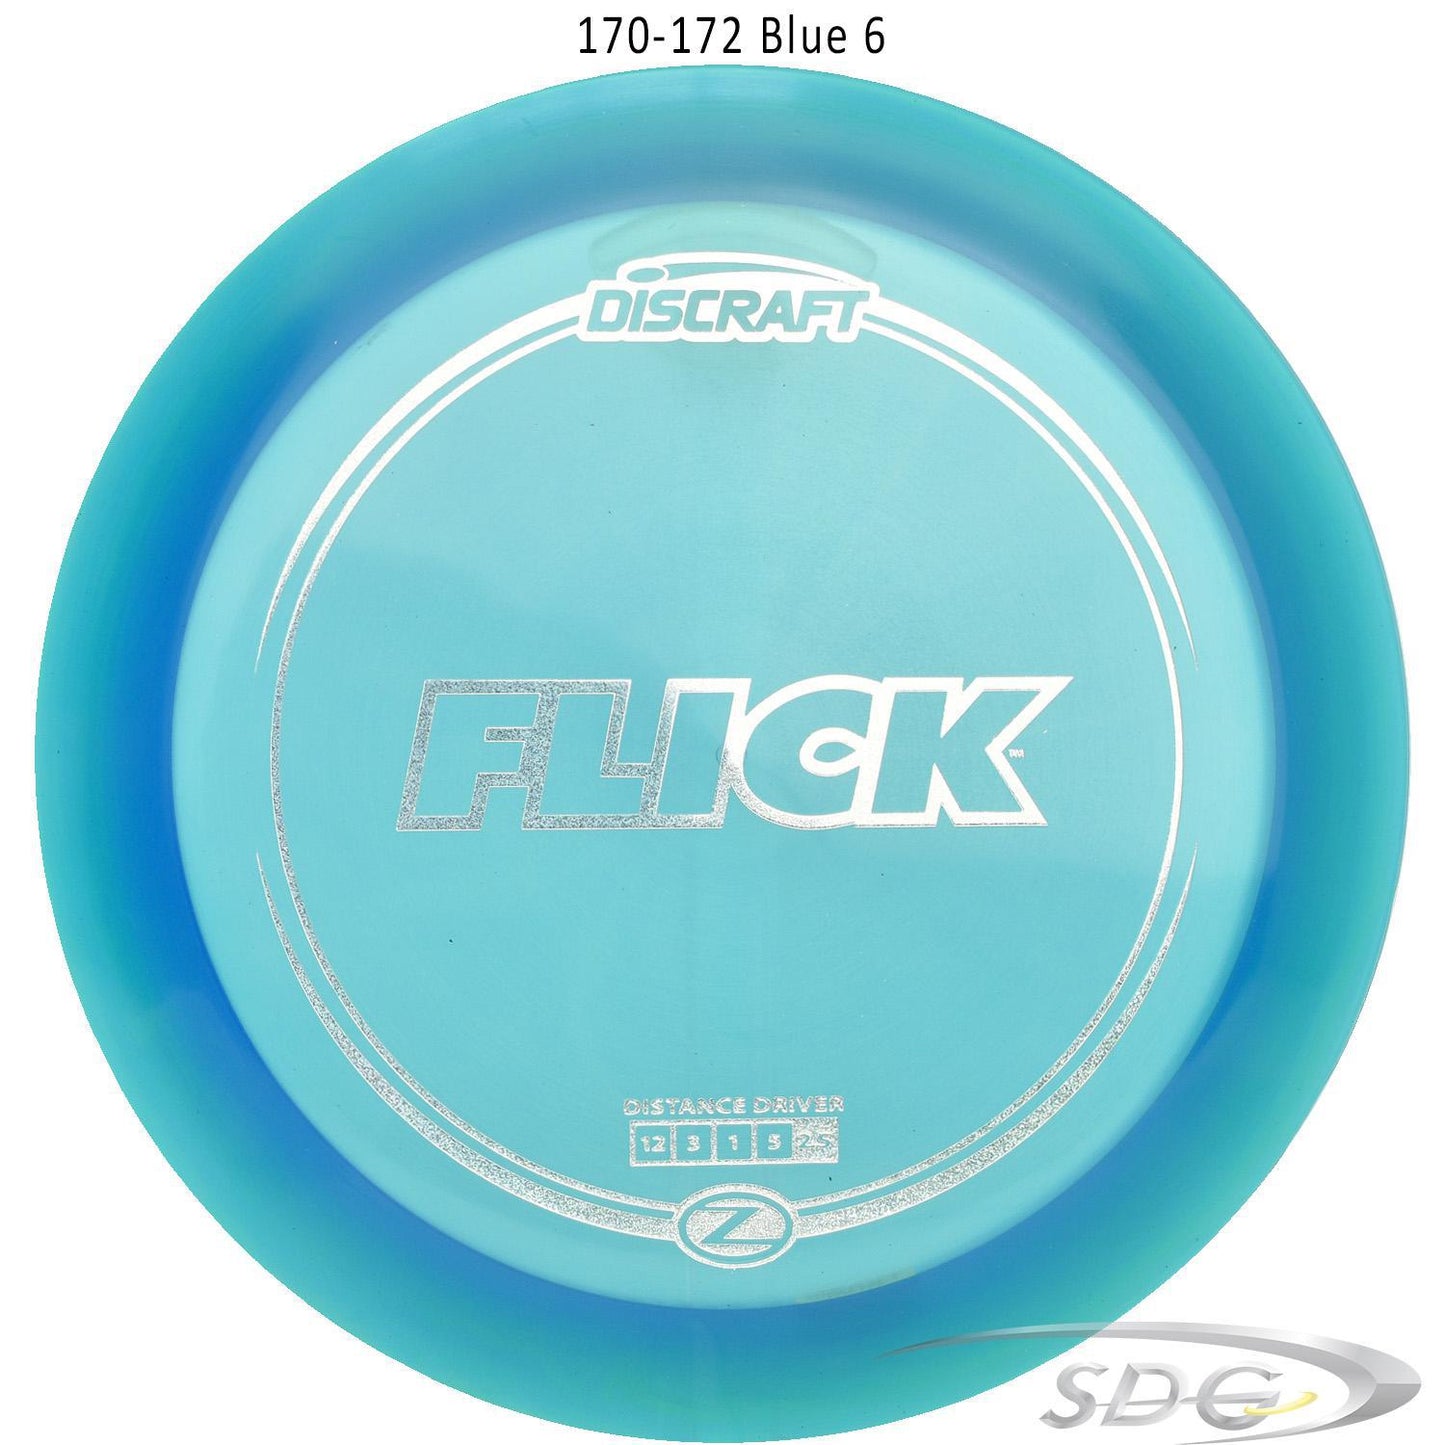 discraft-z-line-flick-disc-golf-distance-driver 170-172 Blue 6